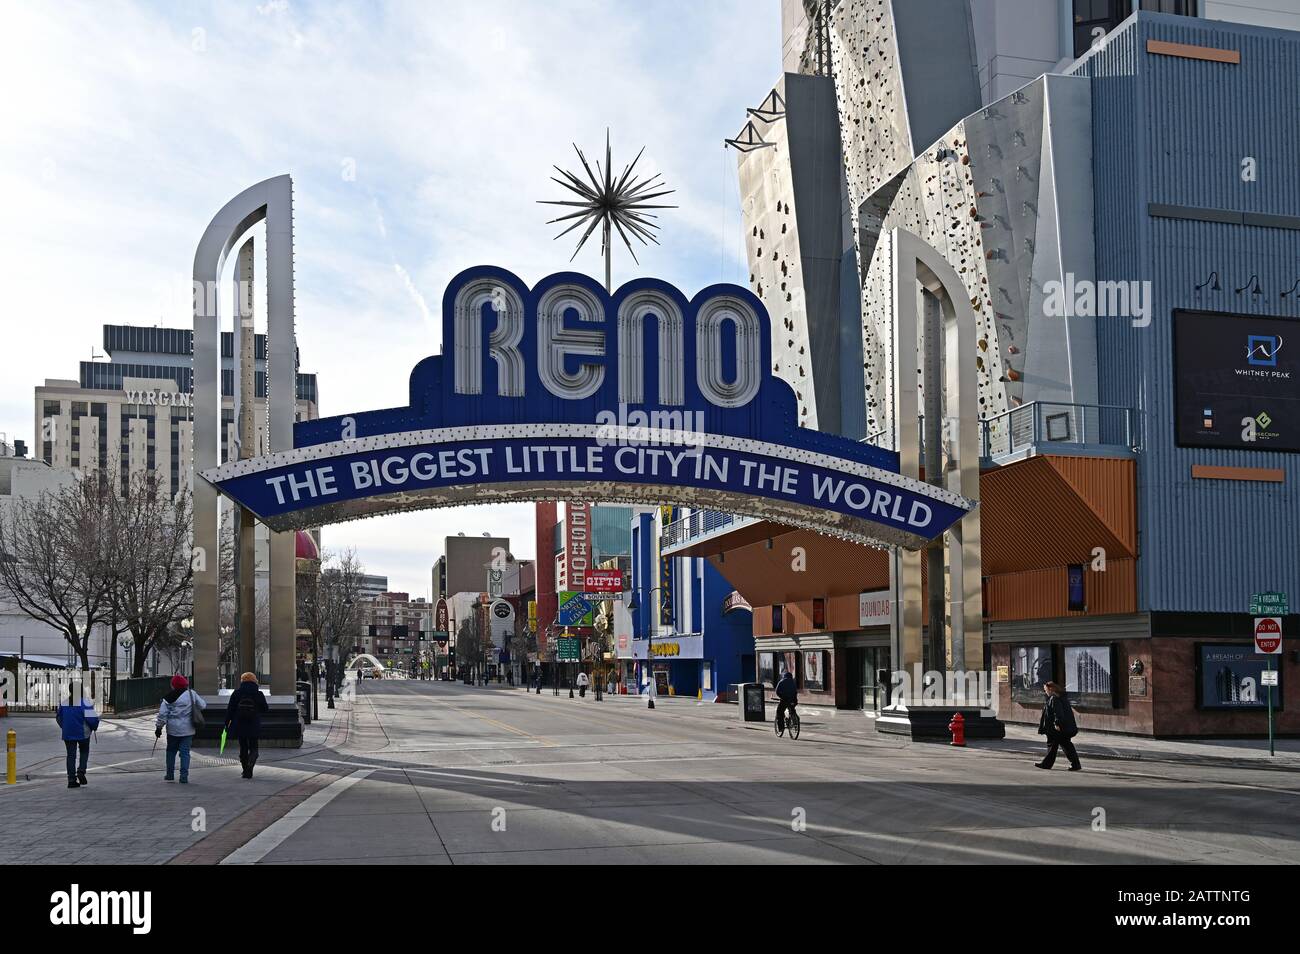 Reno, Nevada - 18. Januar 2020: Die größte Kleine Stadt der Welt wird am frühen Morgen unterzeichnet. Stockfoto